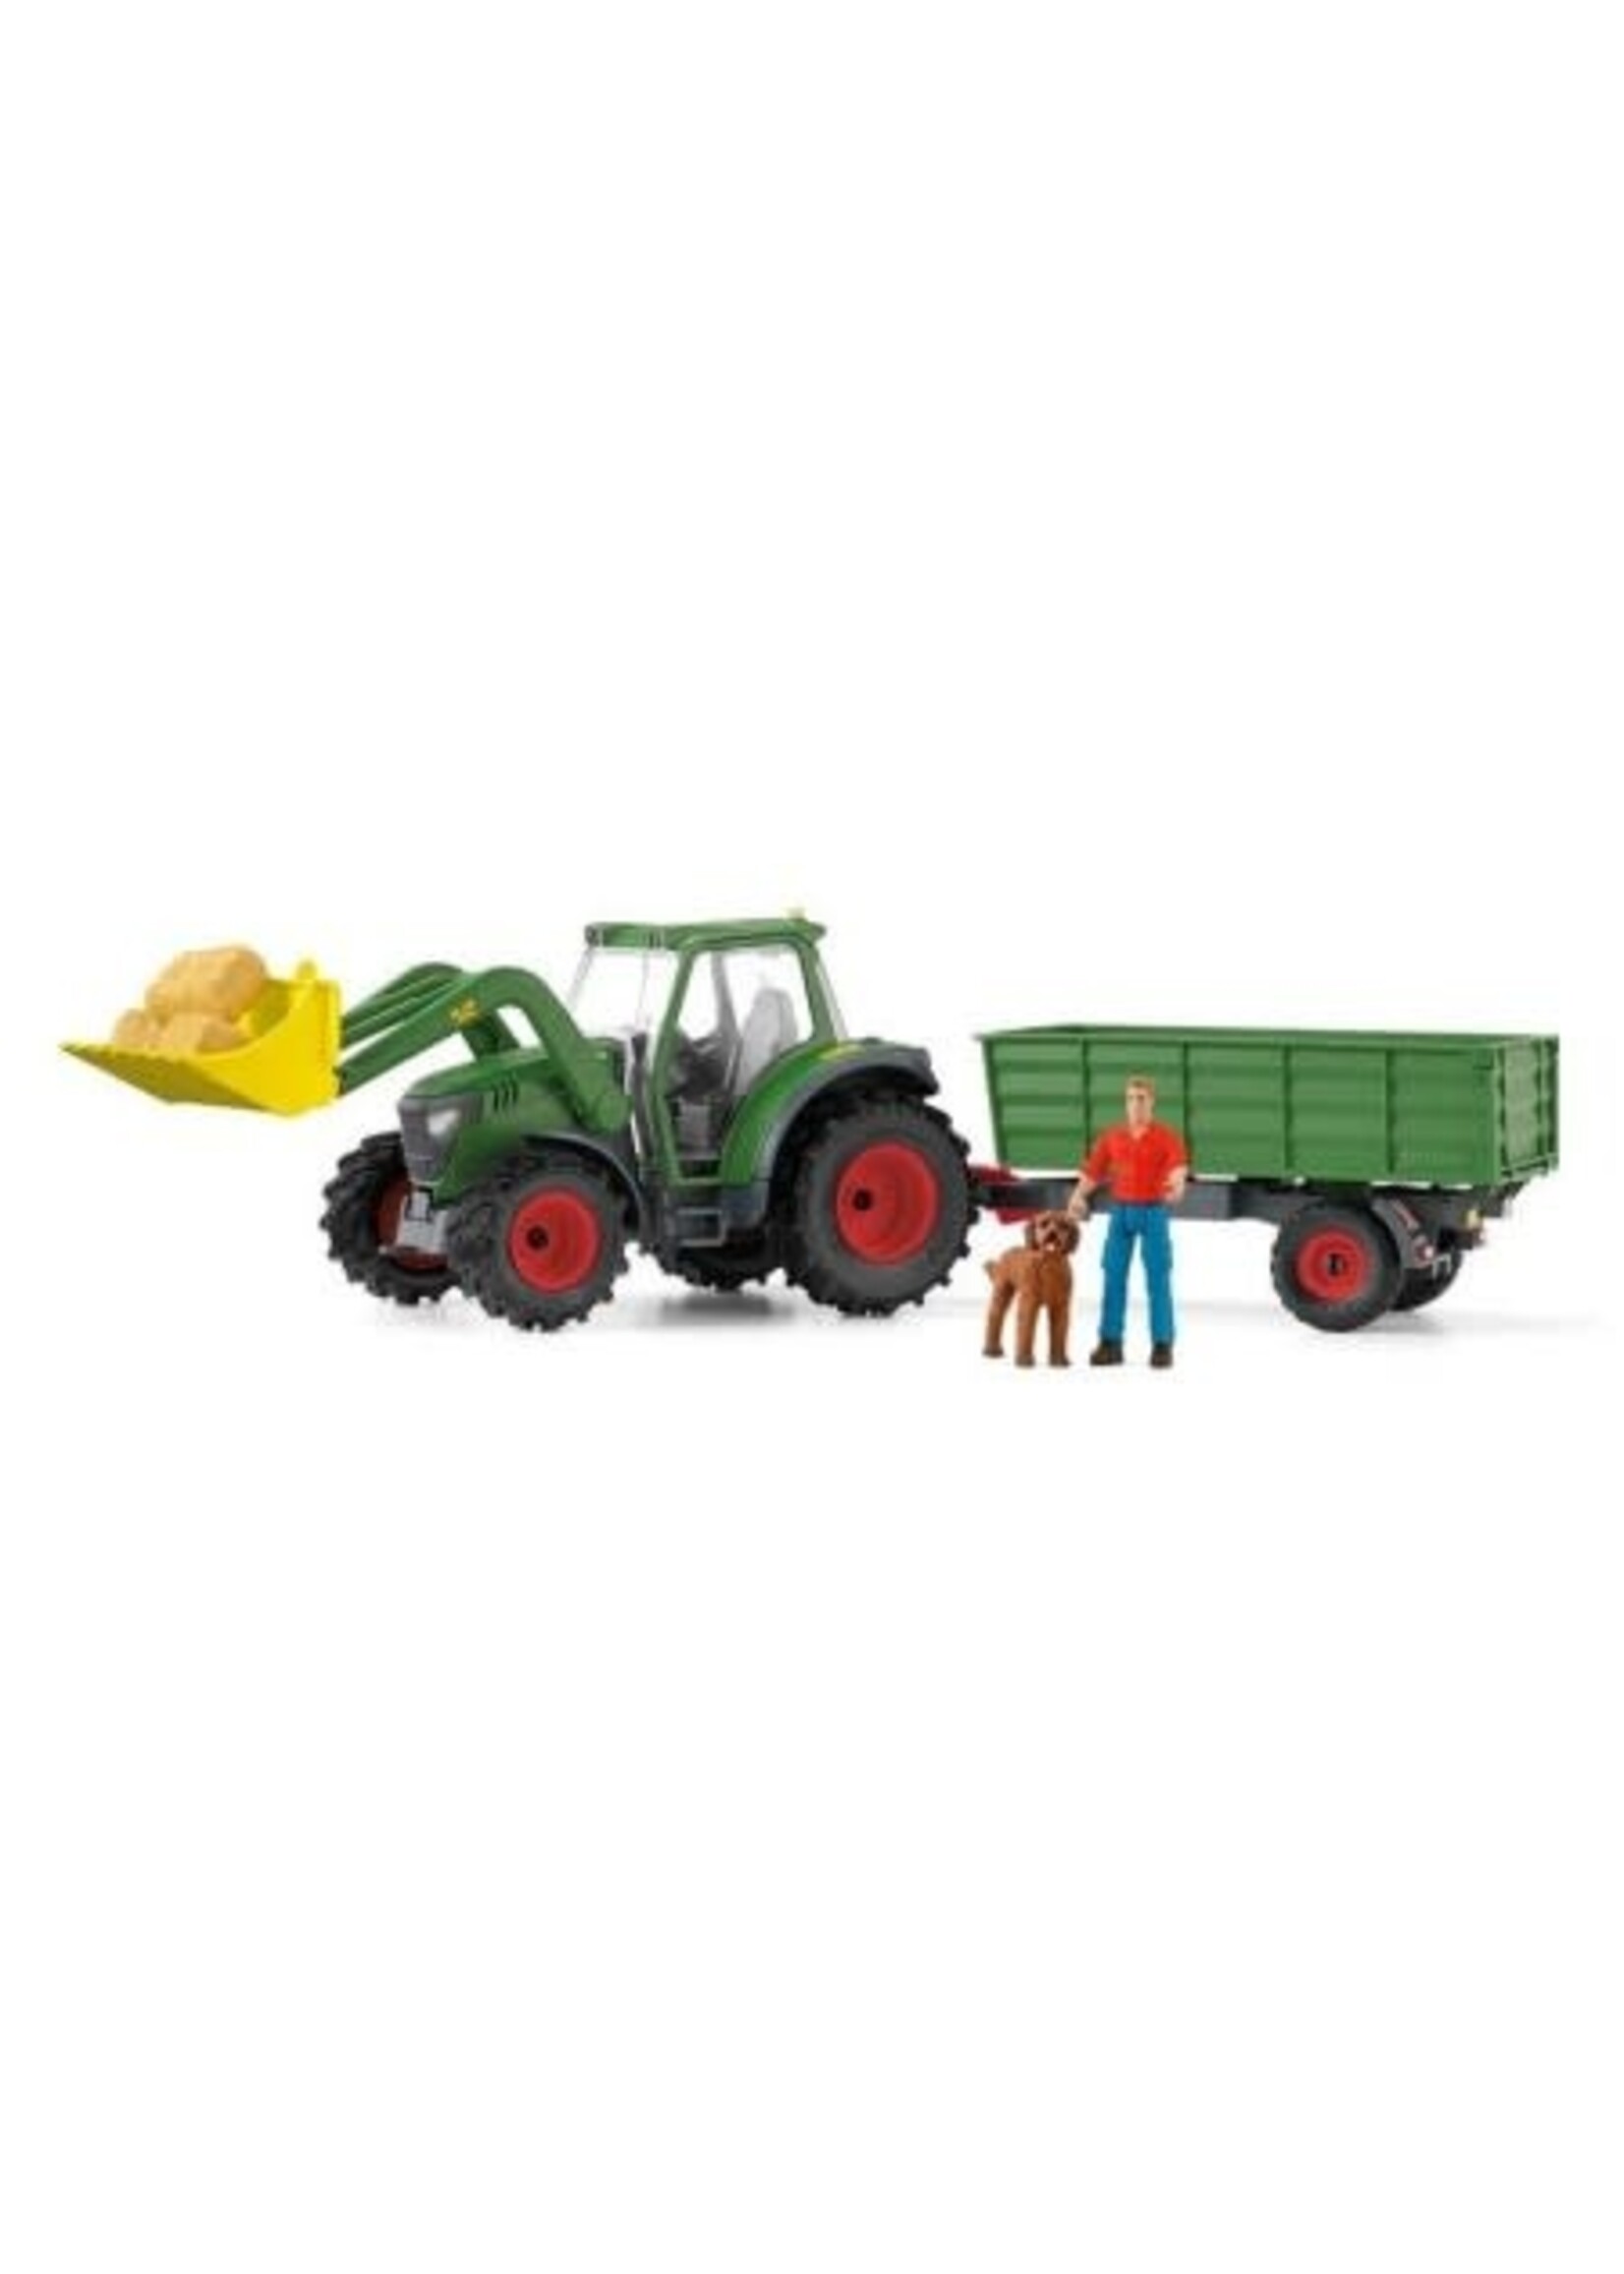 Schleich SCHLEICH Farm World - Tractor met Aanhangwagen - 42608